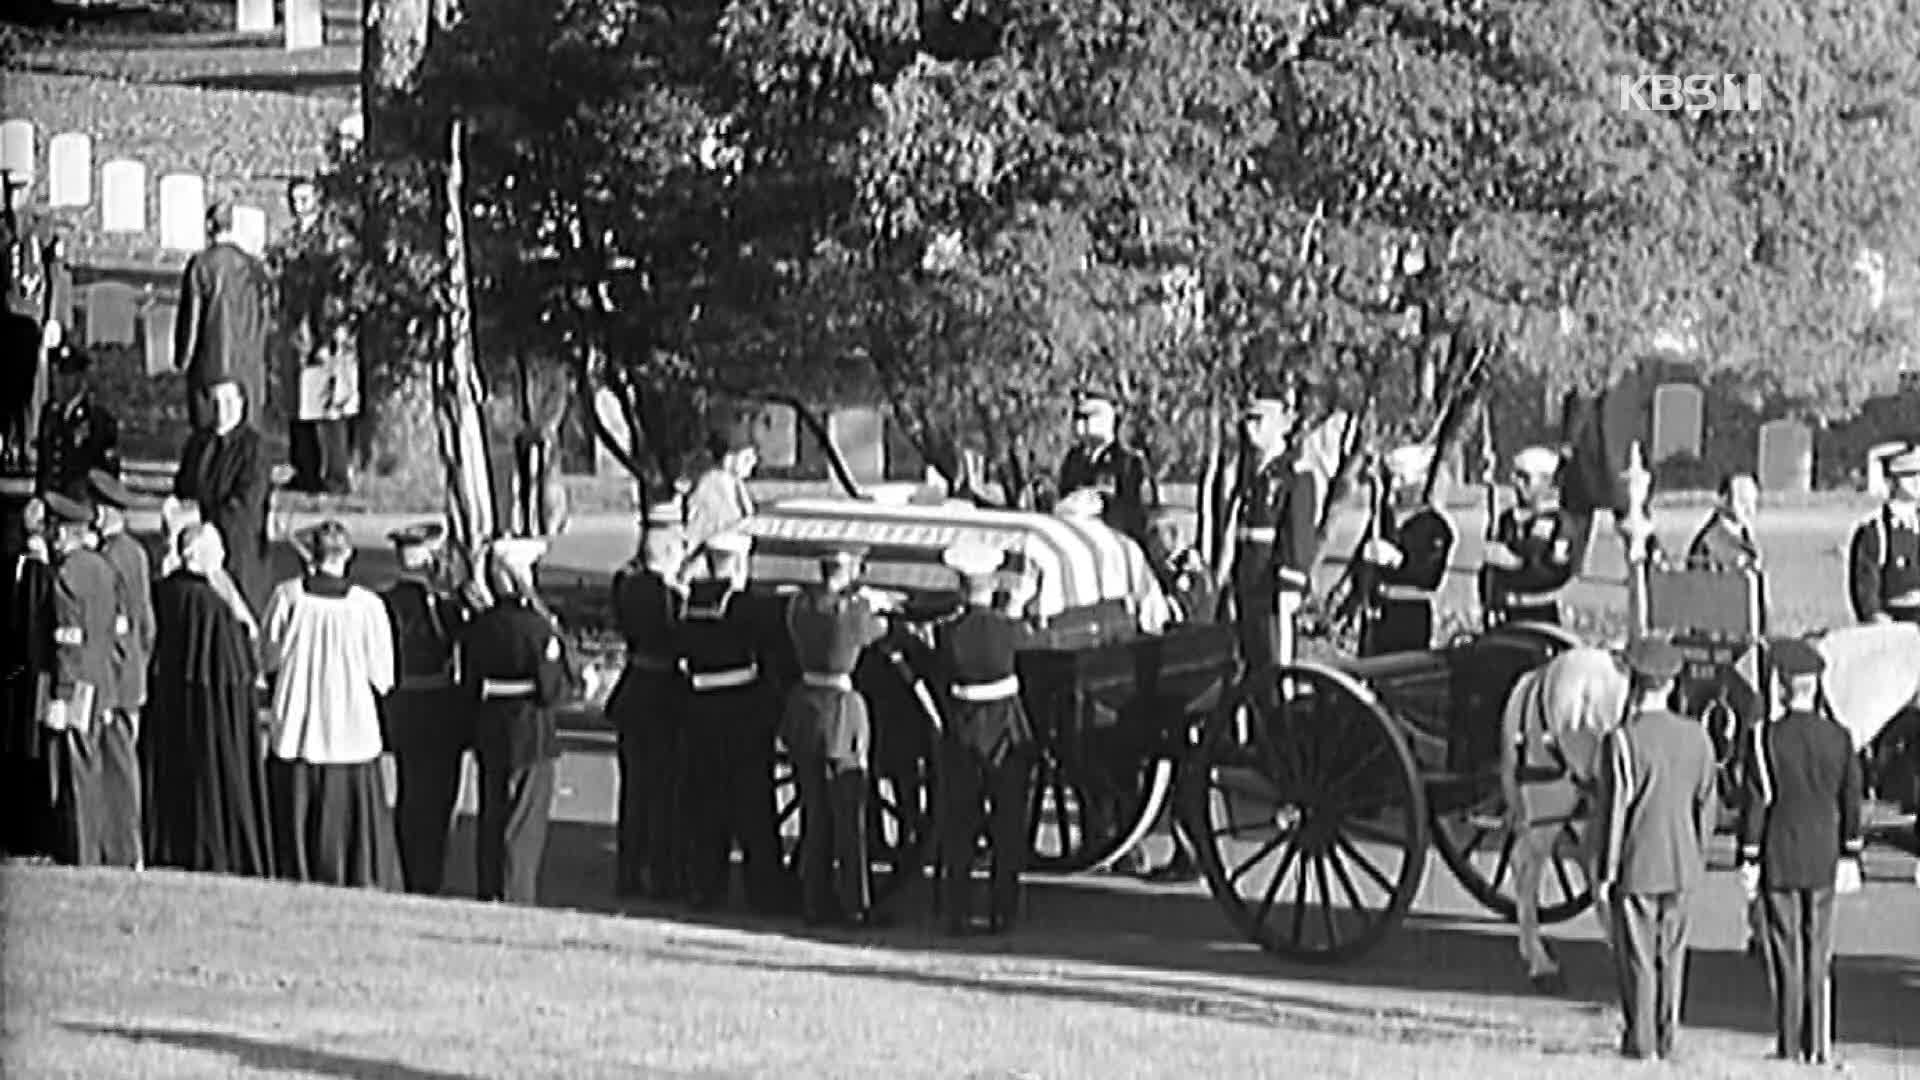 [오늘은] 존 F. 케네디 미국 대통령 암살 사건 (1963.11.22.)